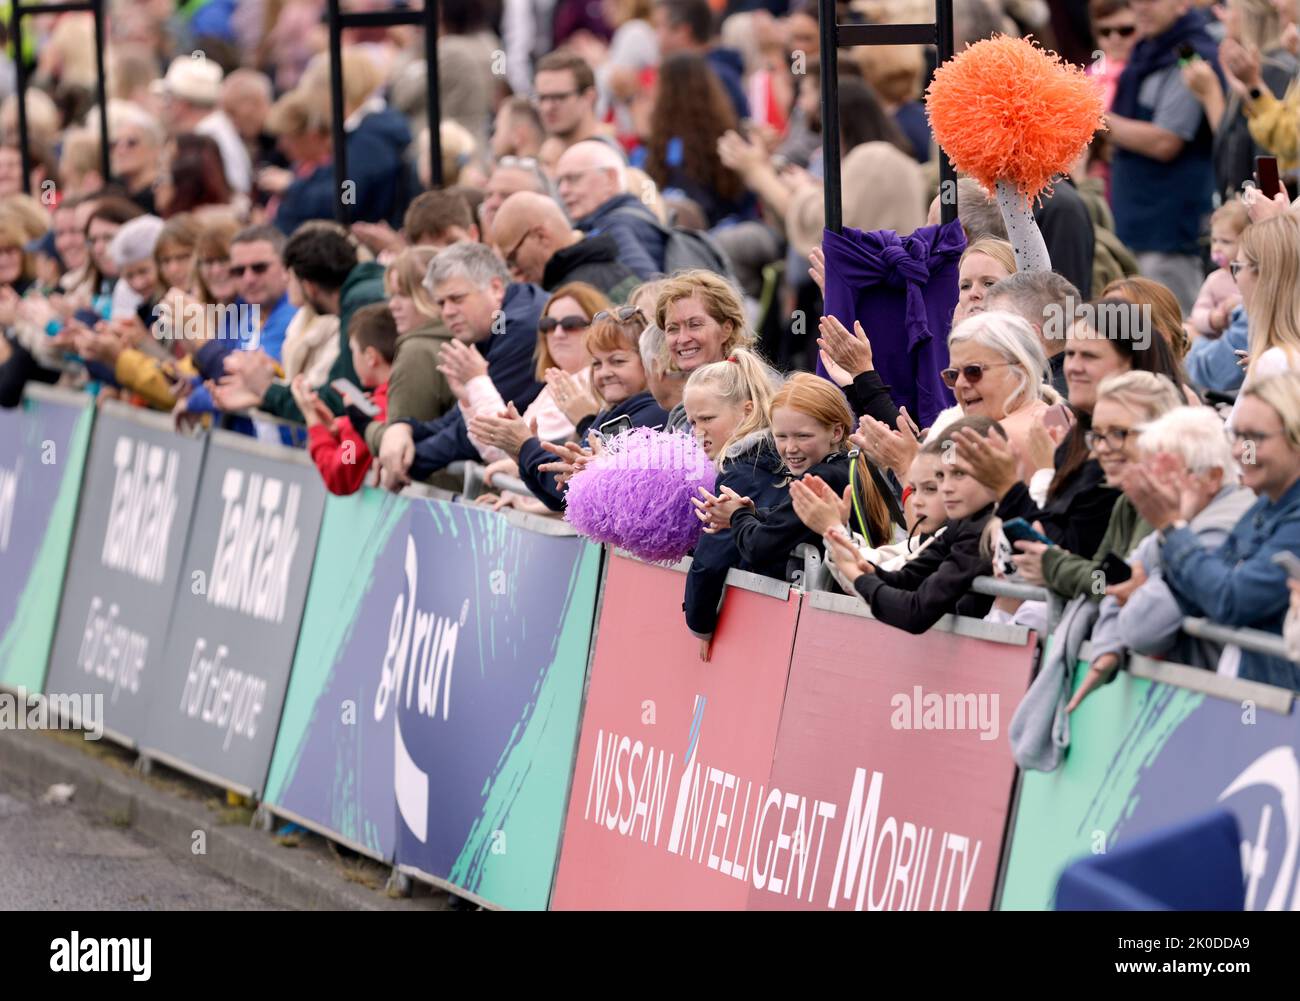 Los espectadores apoyan a los atletas en la línea de meta durante la carrera Great North Run a través de Newcastle upon Tyne, Gateshead y South Shields. Fecha de la foto: Domingo 11 de septiembre de 2022. Foto de stock